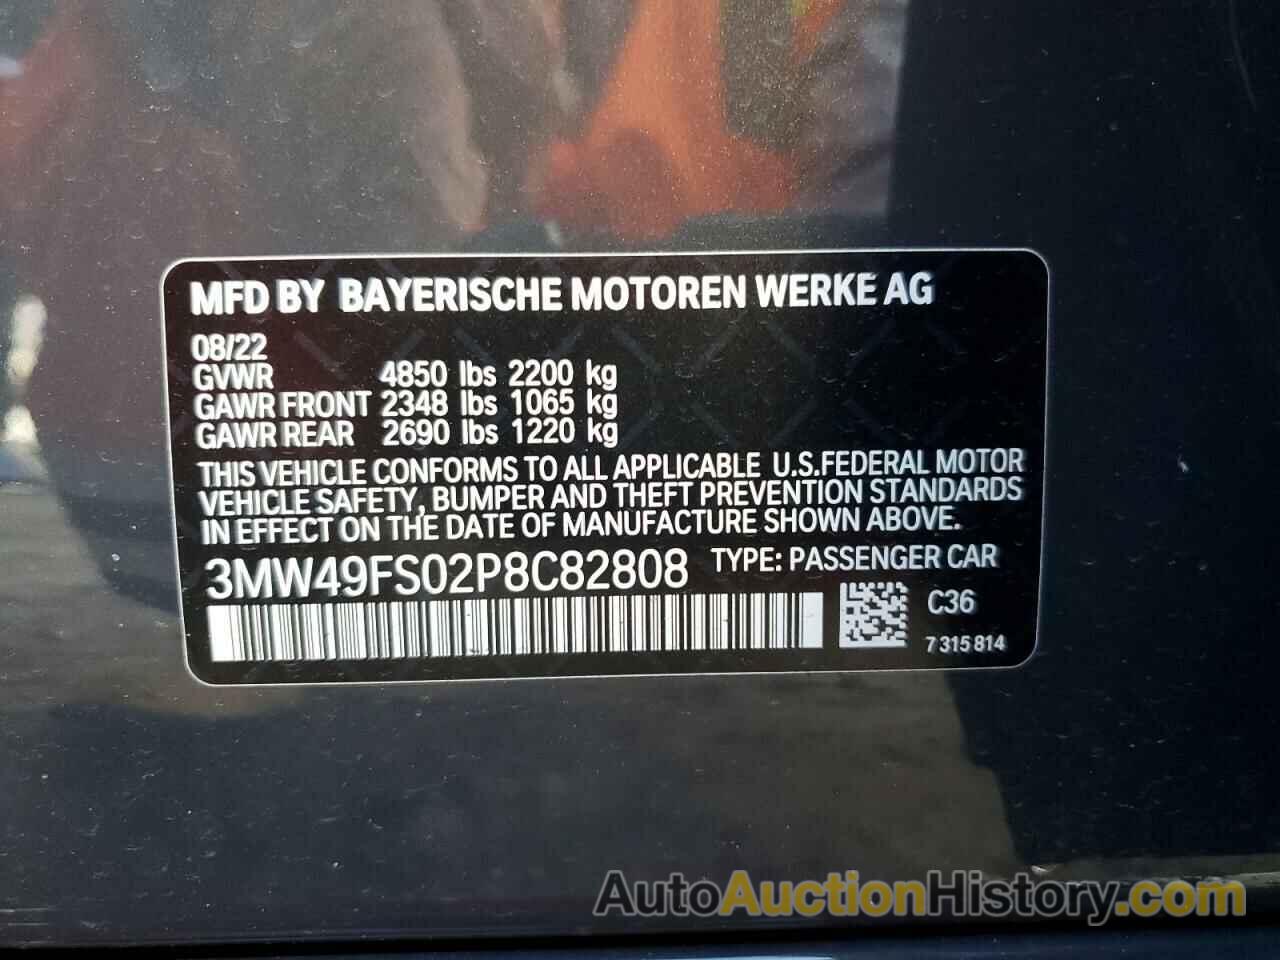 BMW M3, 3MW49FS02P8C82808